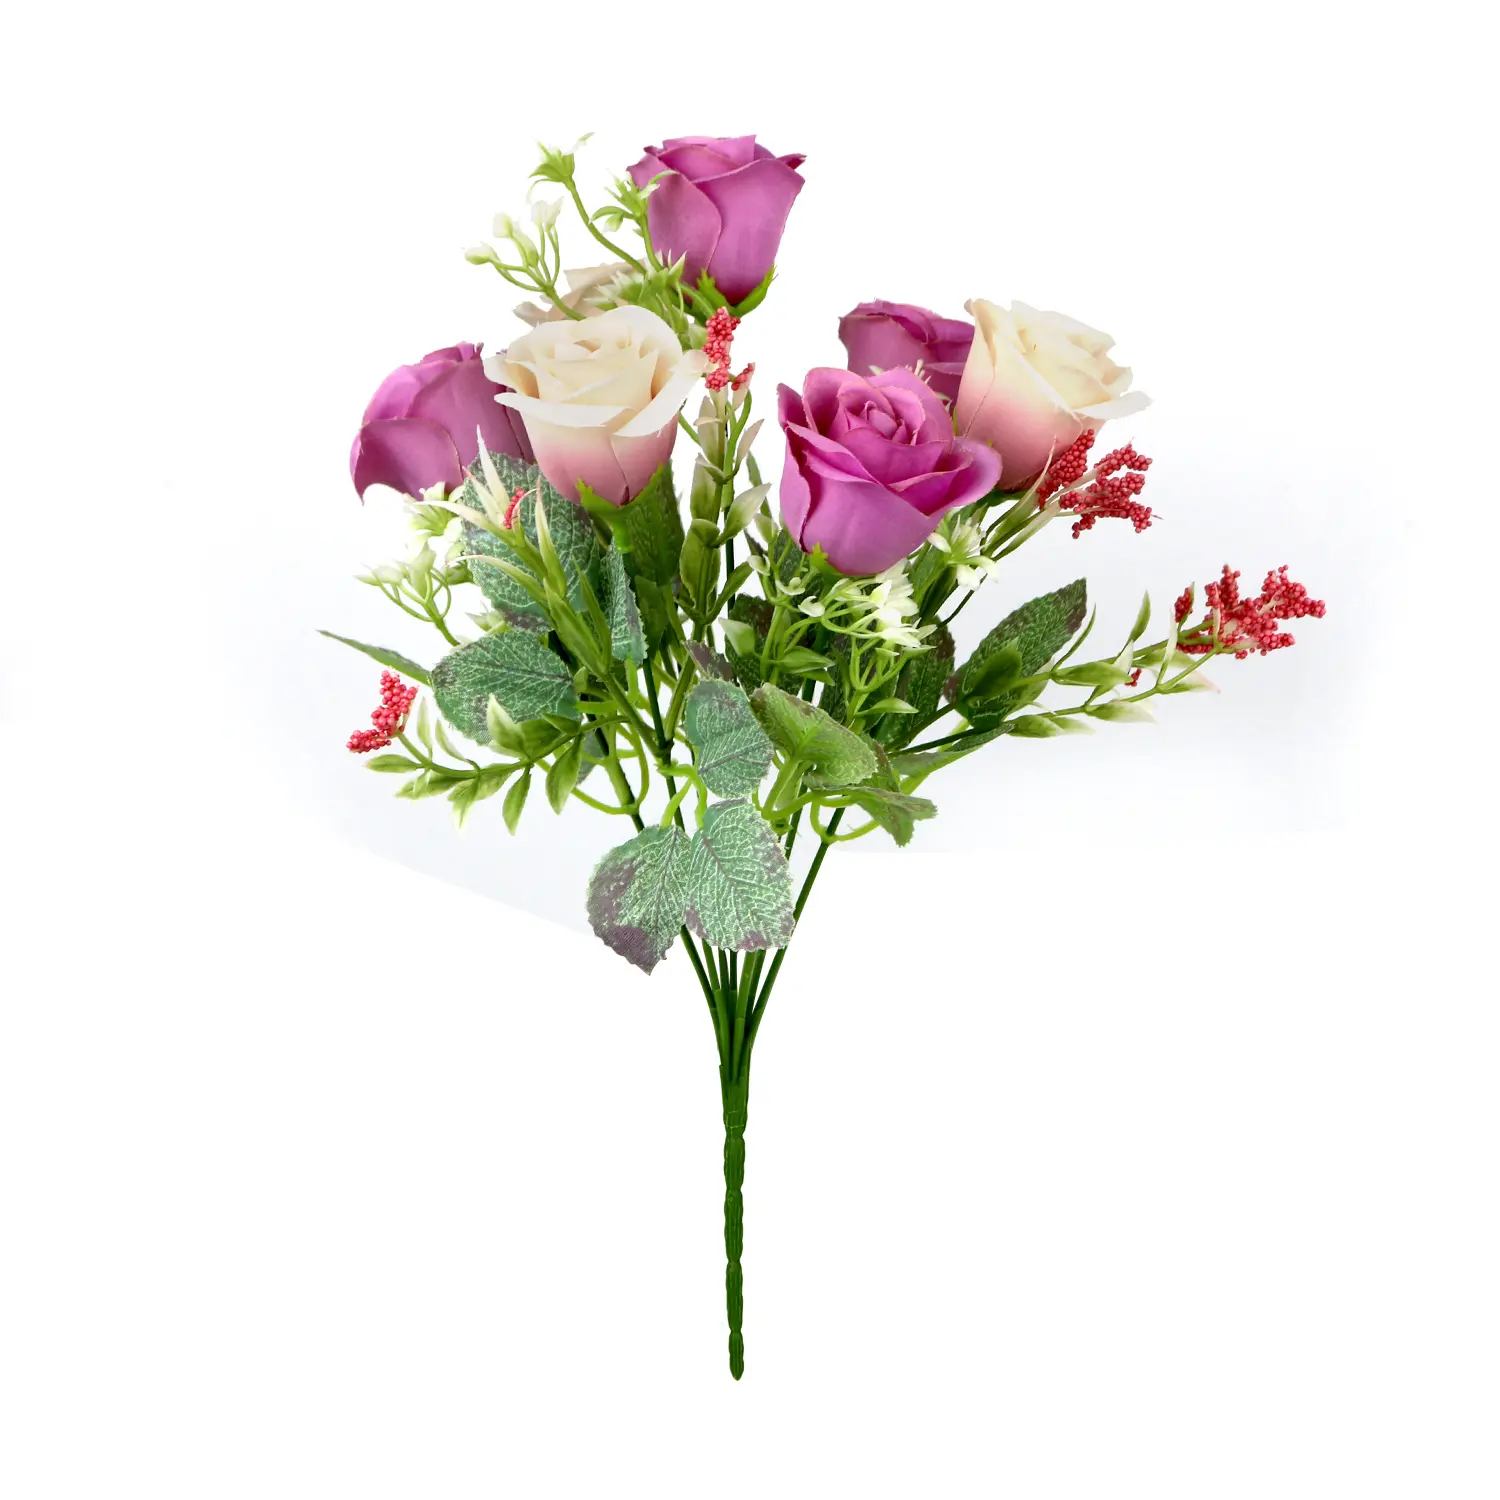 2020ใหม่พลาสติกสีขาว Pu ช่อดอกไม้ขายส่งทิวลิปกุหลาบดอกไม้ผ้าไหมประดิษฐ์ดอกทิวลิป